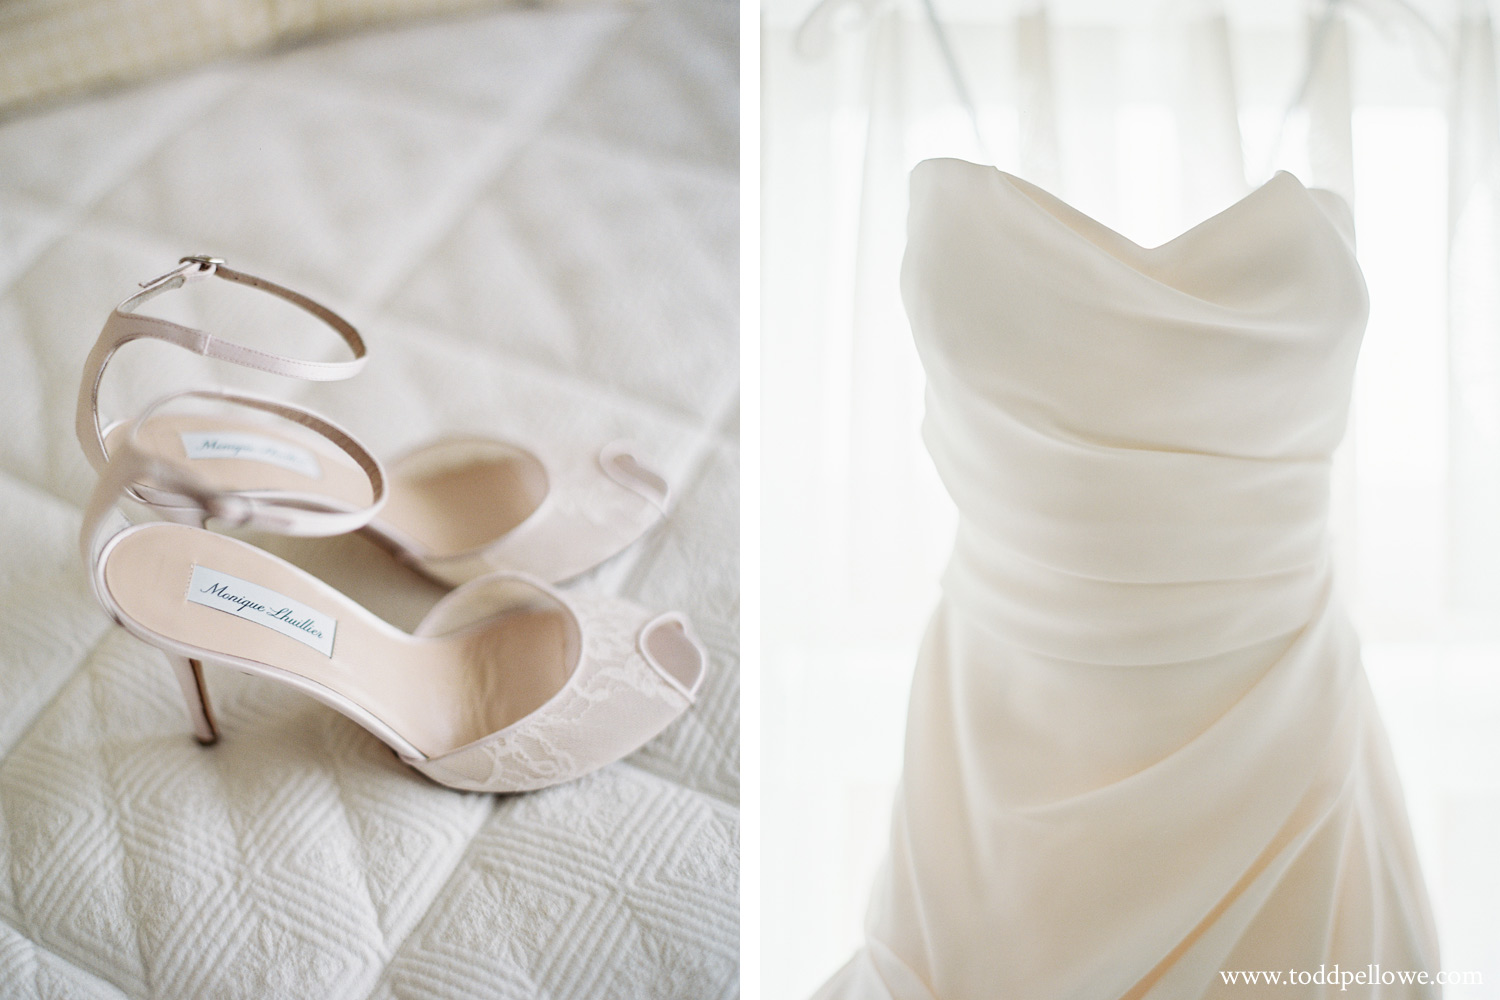 Monique Lhuillier Wedding Shoes and dress